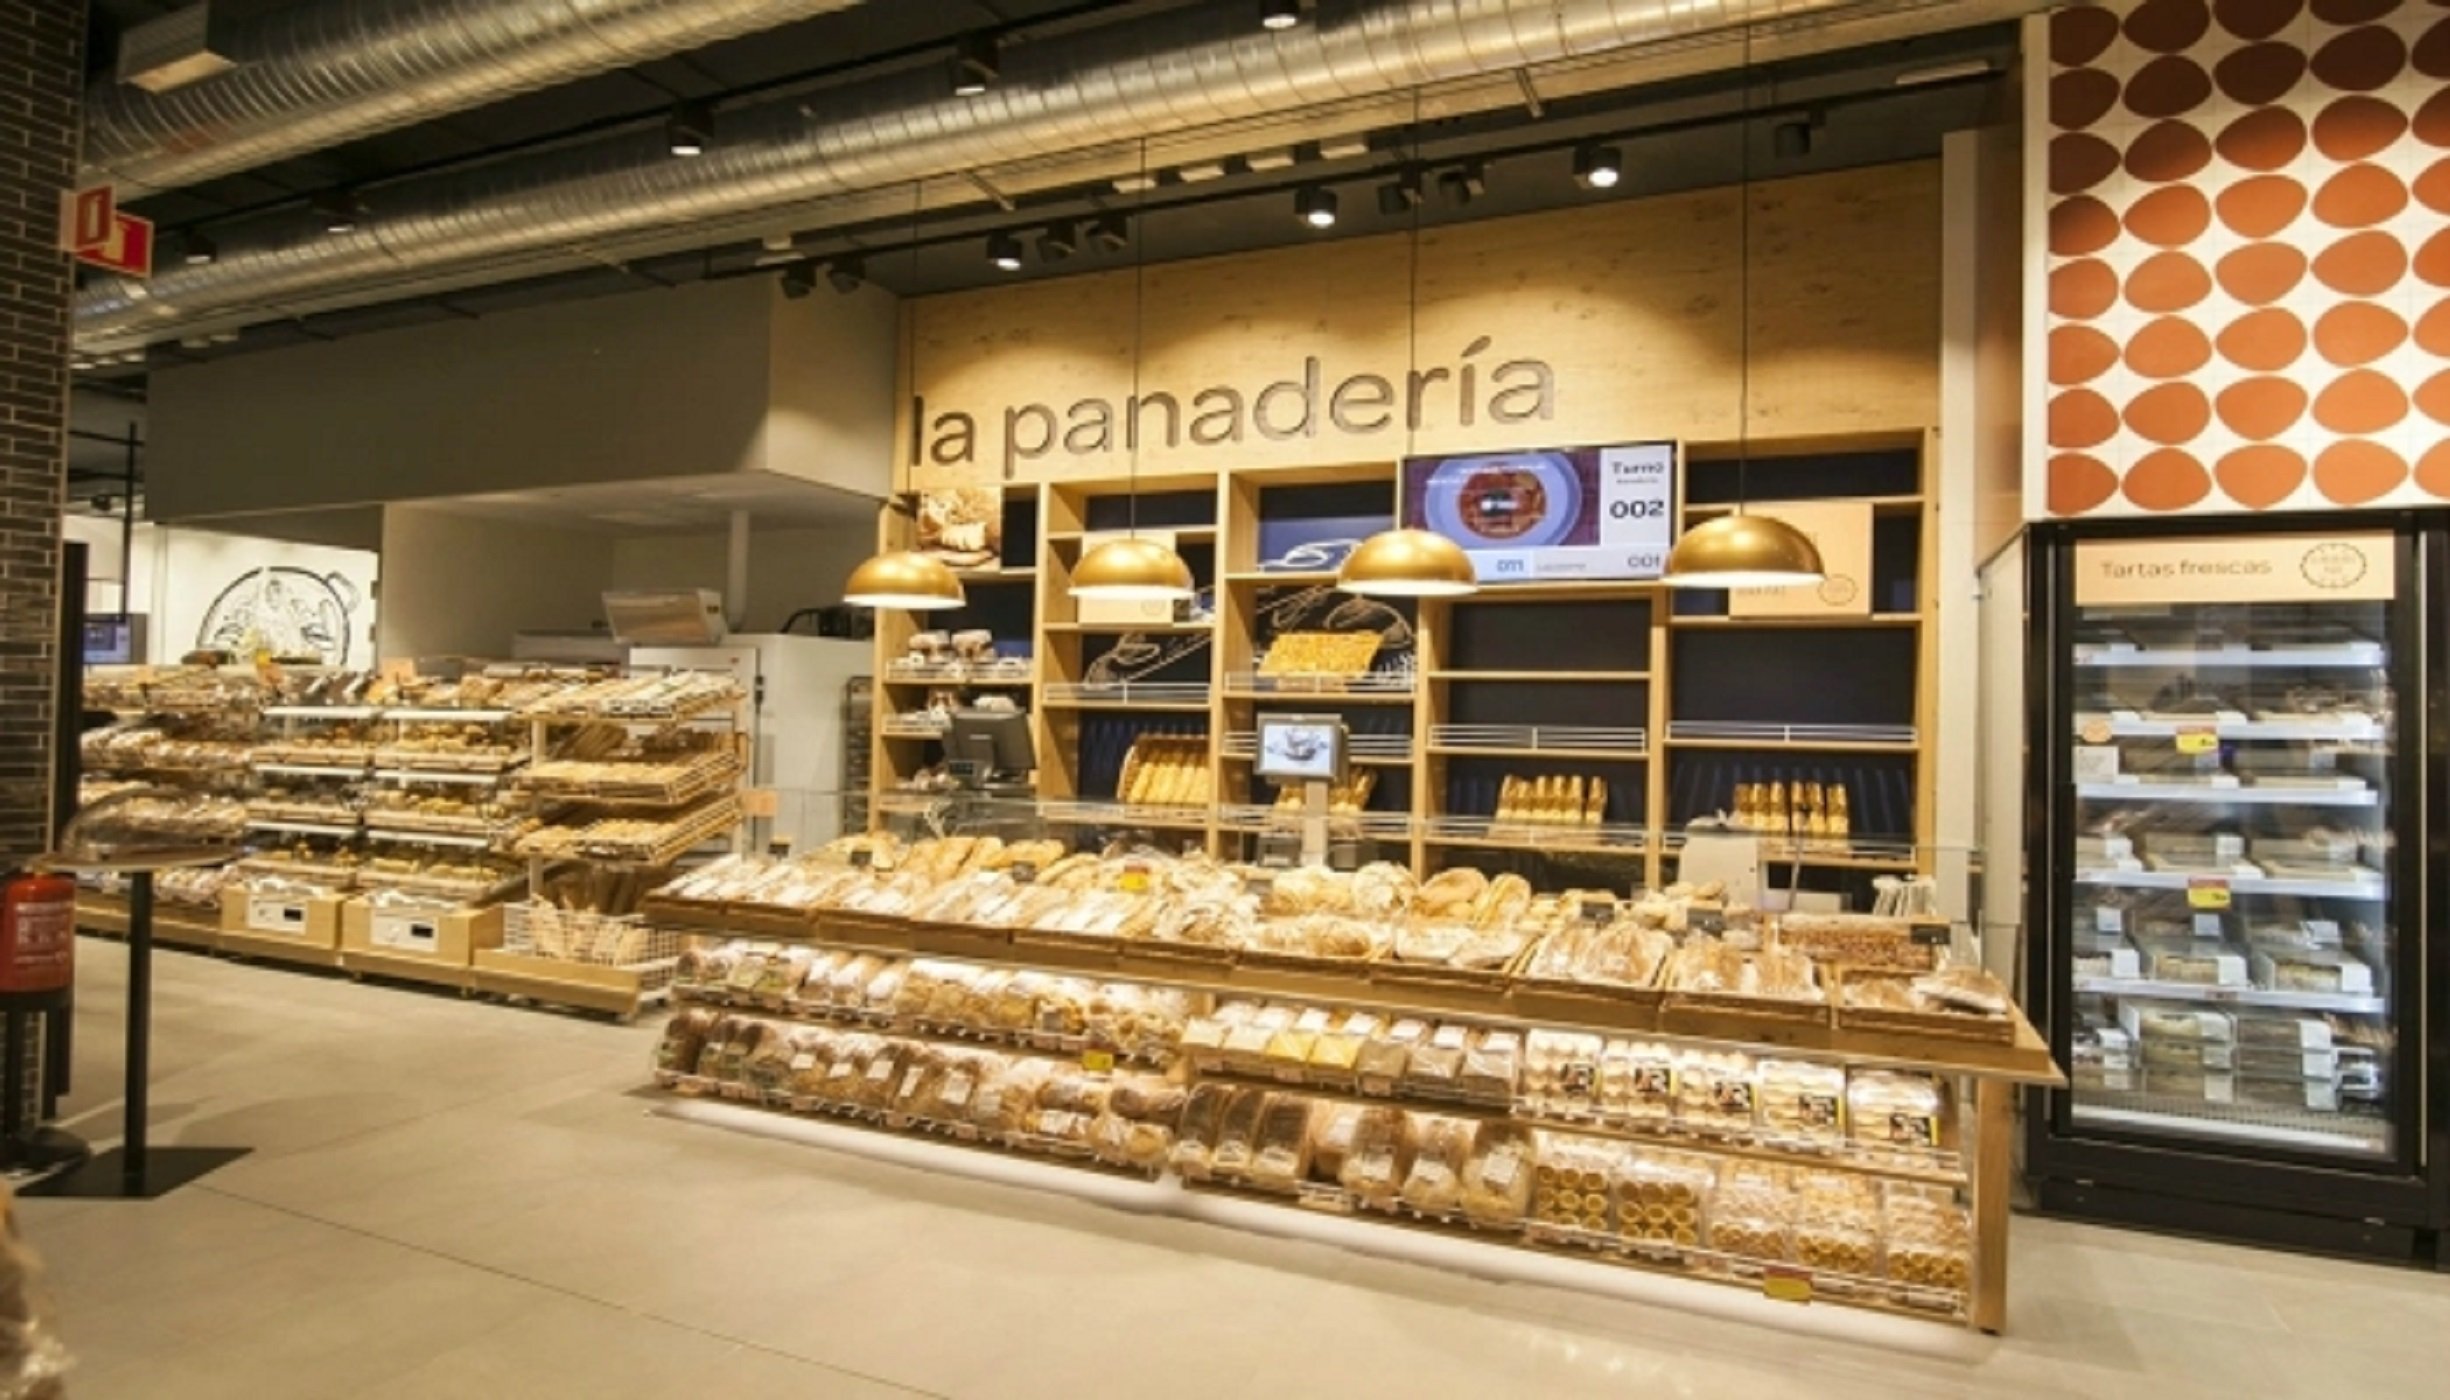 Panaderia / Carrefour